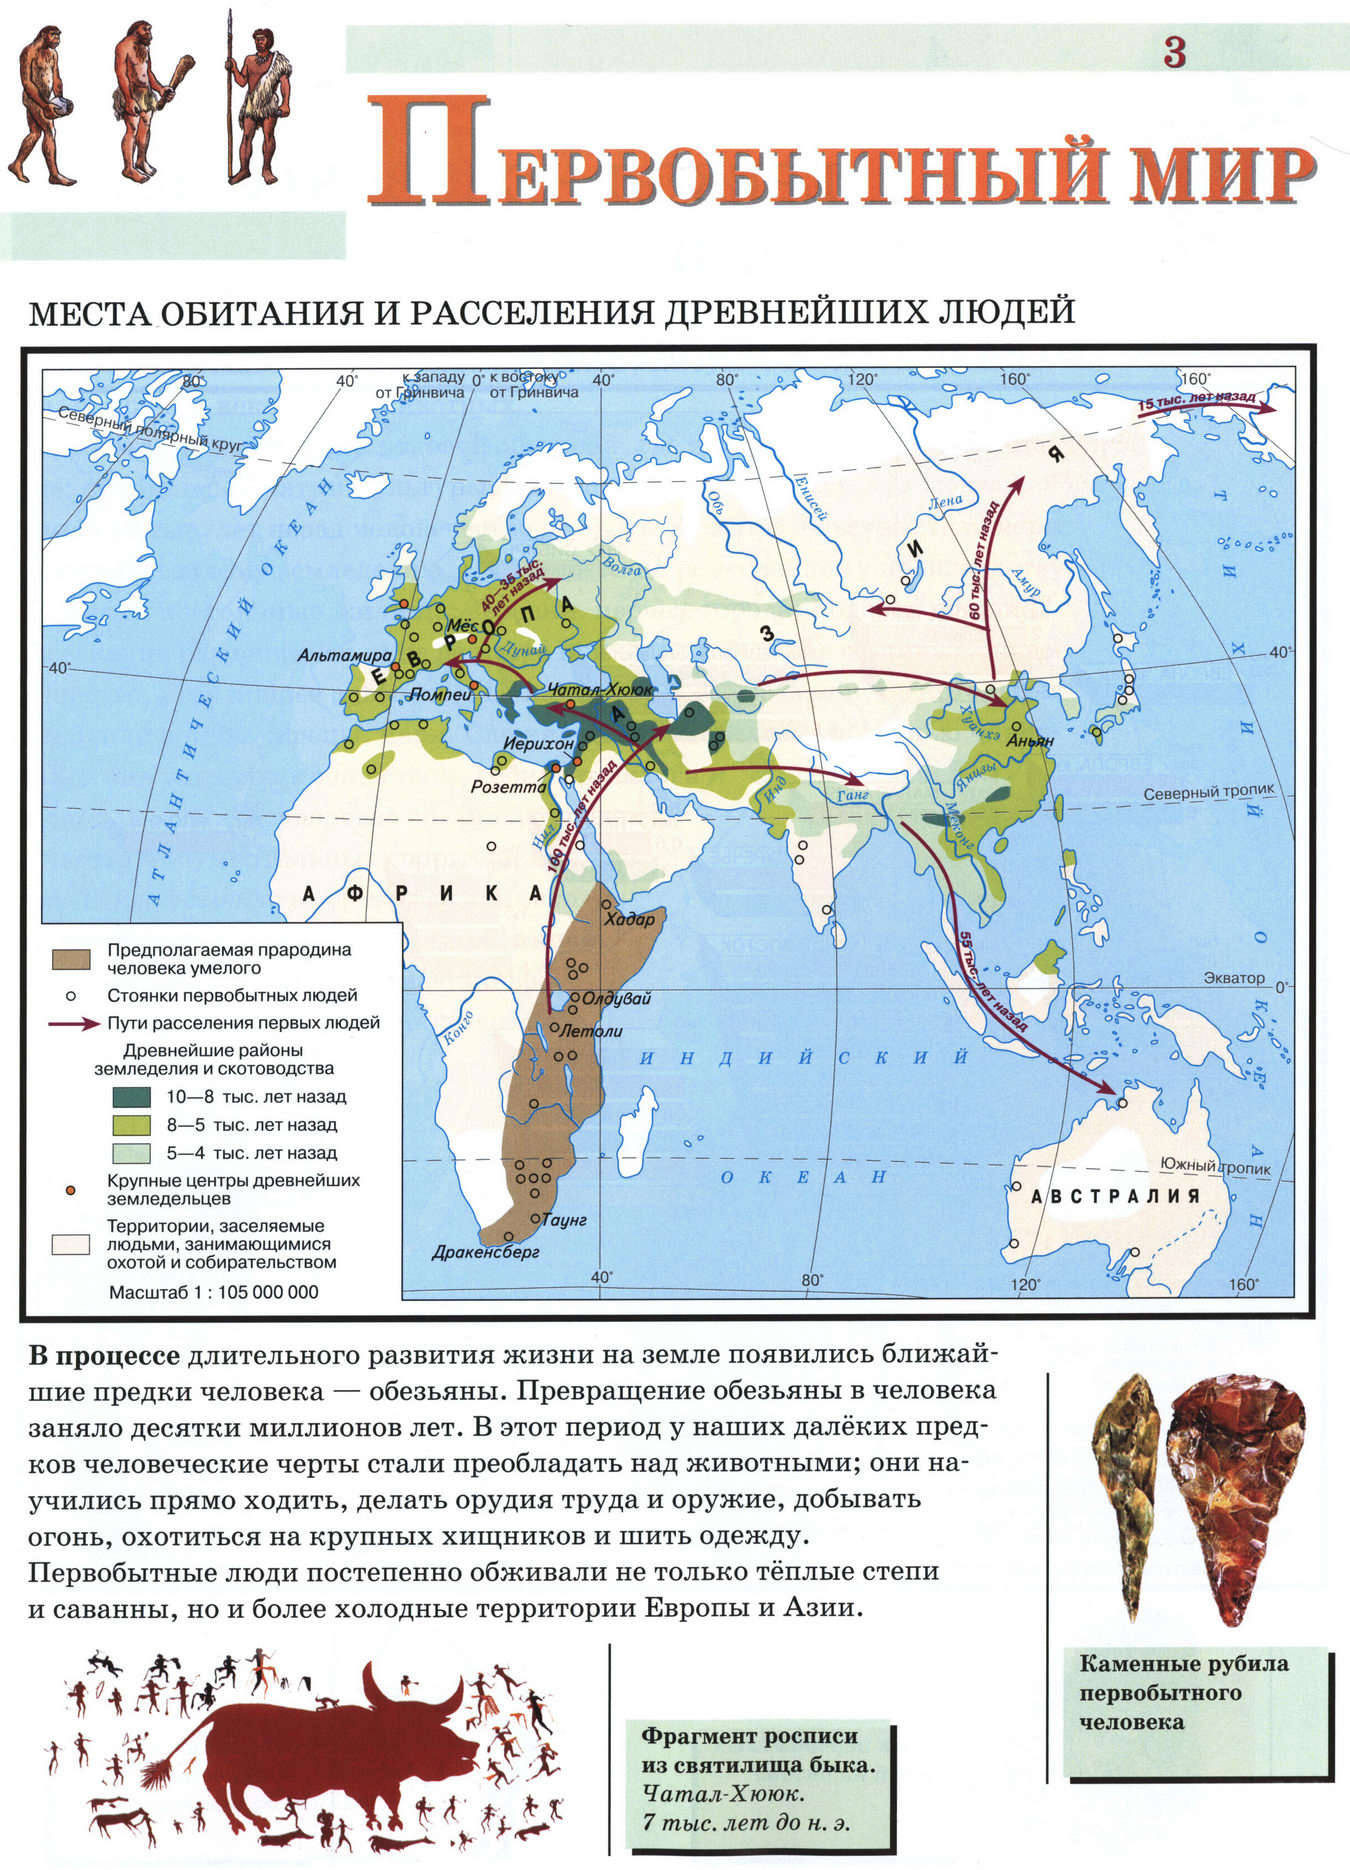 Первобытный мир - карта атласа по истории Древнего мира, 5 класс, Дрофа -Решебник